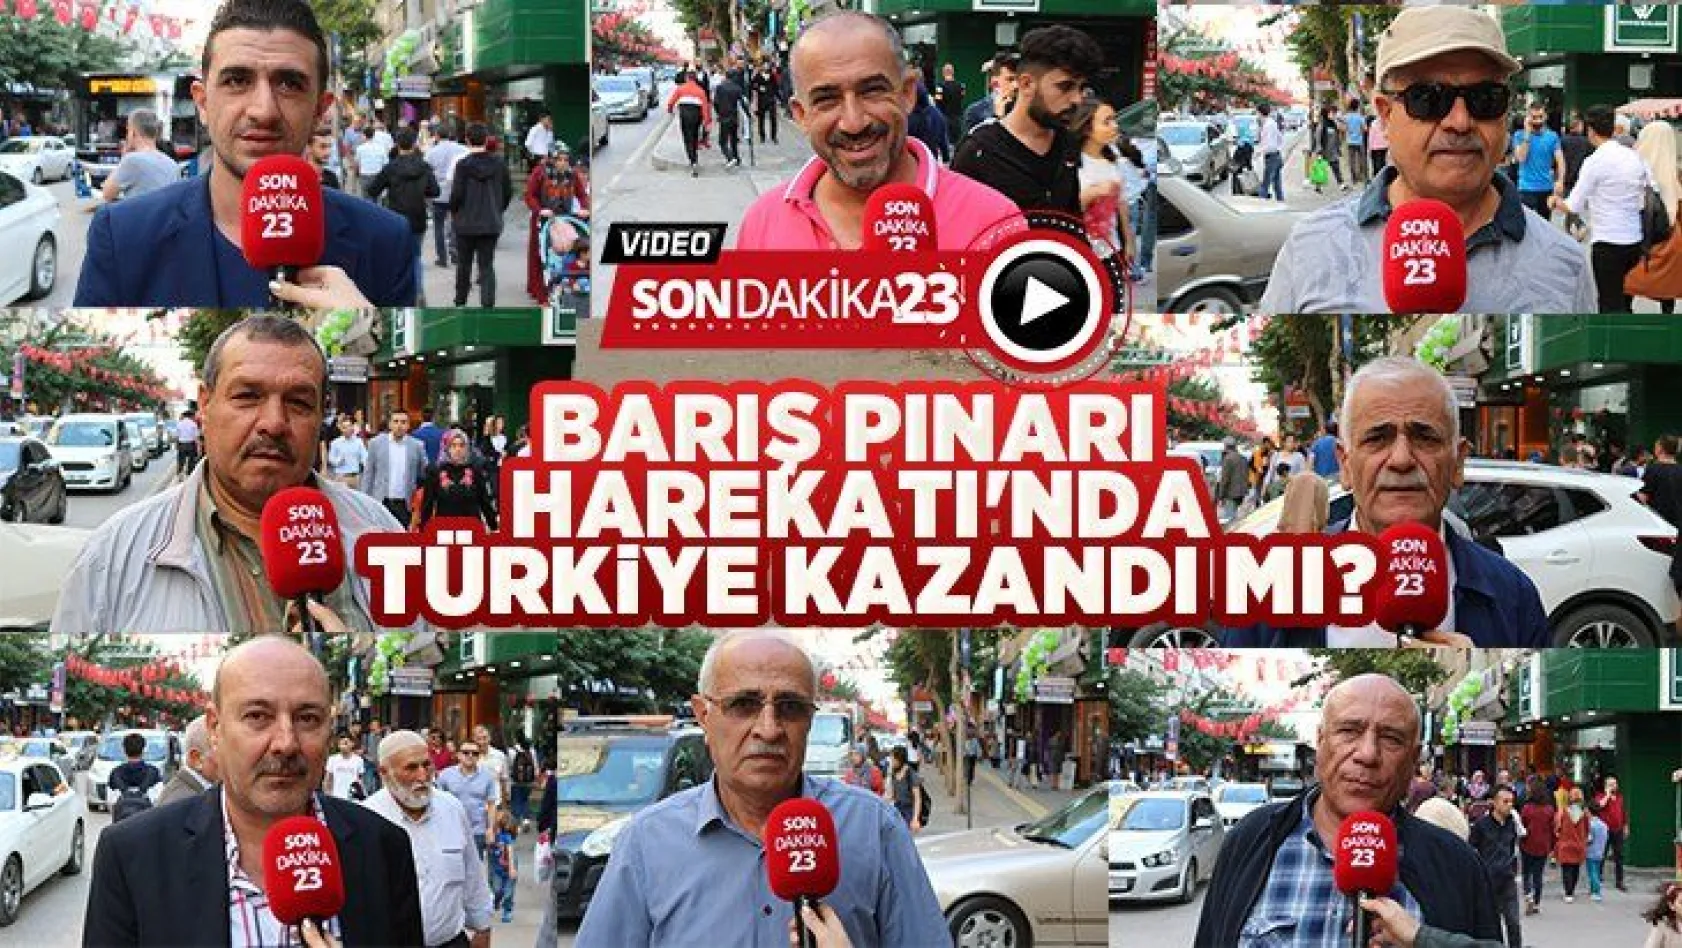 Barış Pınarı Harekatı'nda Türkiye kazandı mı?